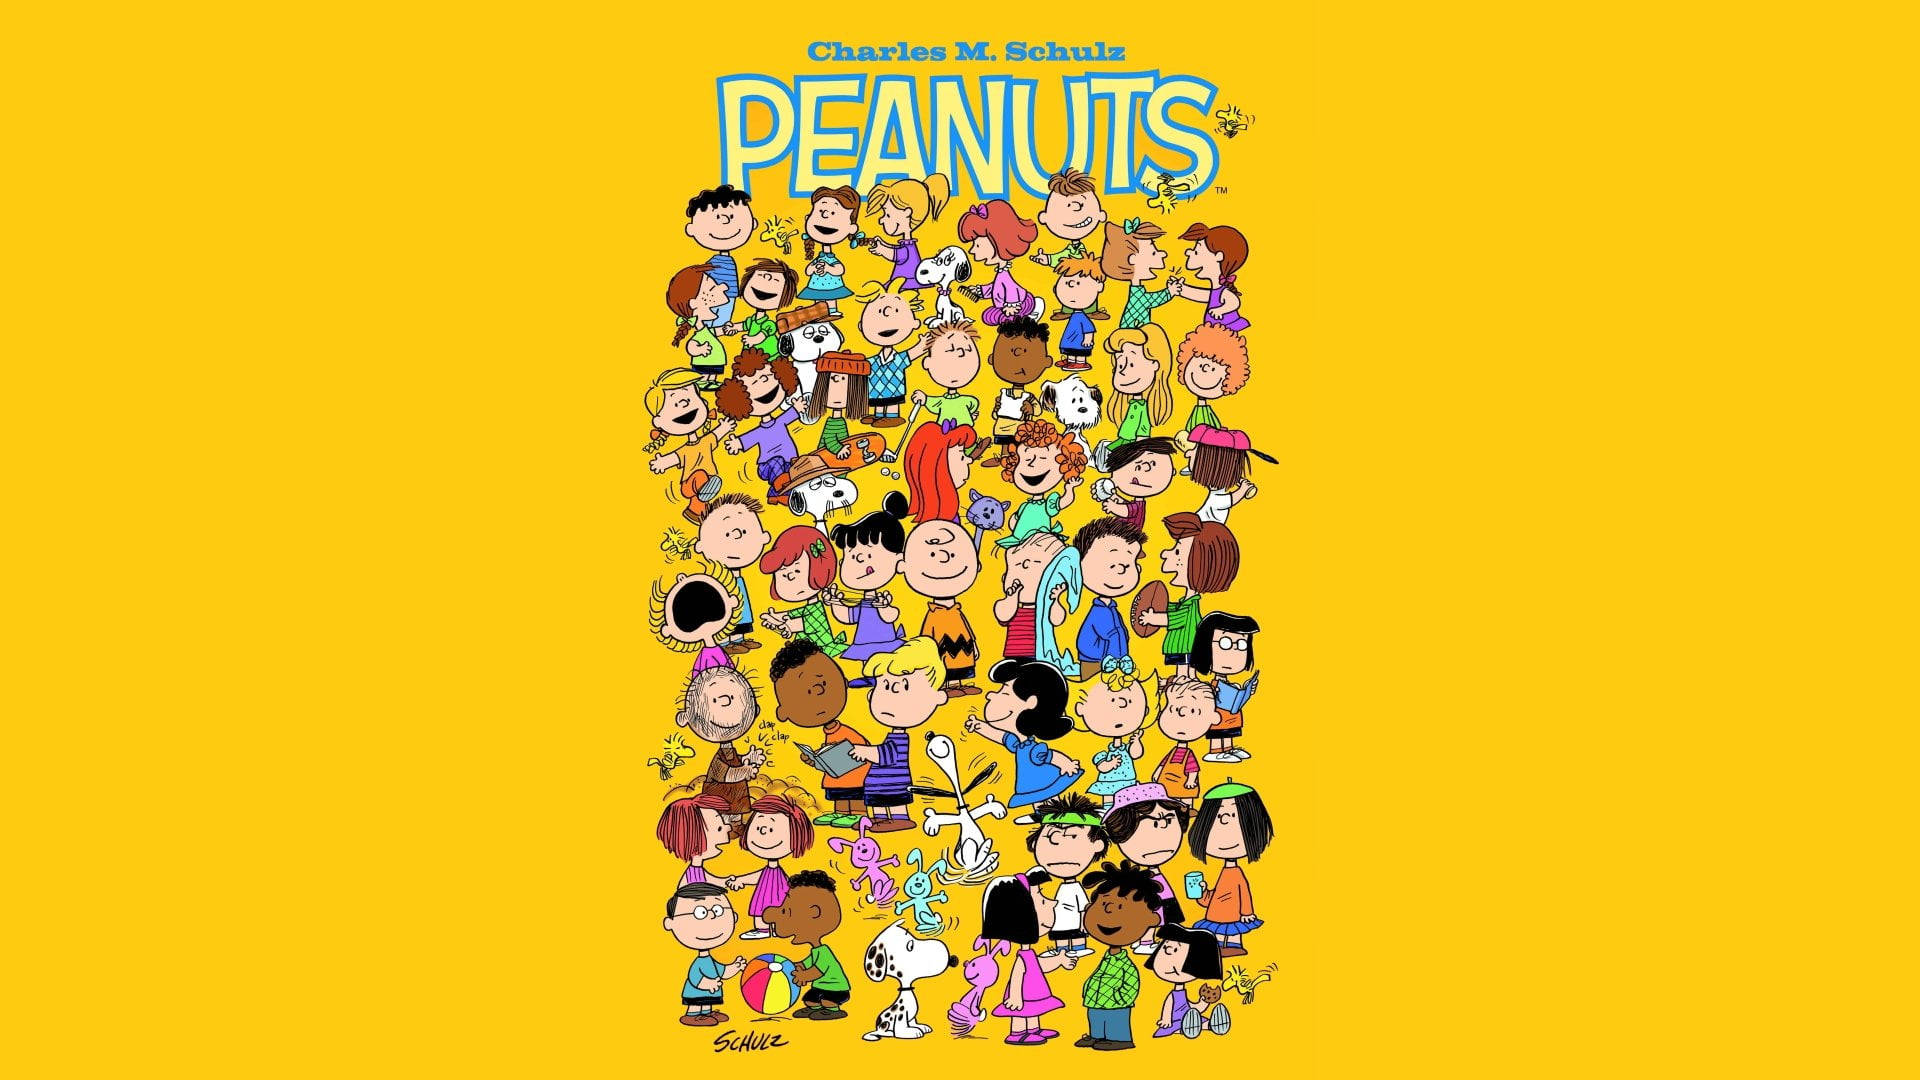 Tirasde Histórícas Em Quadrinhos Peanuts, Criadas Por Charles Schulz. Papel de Parede